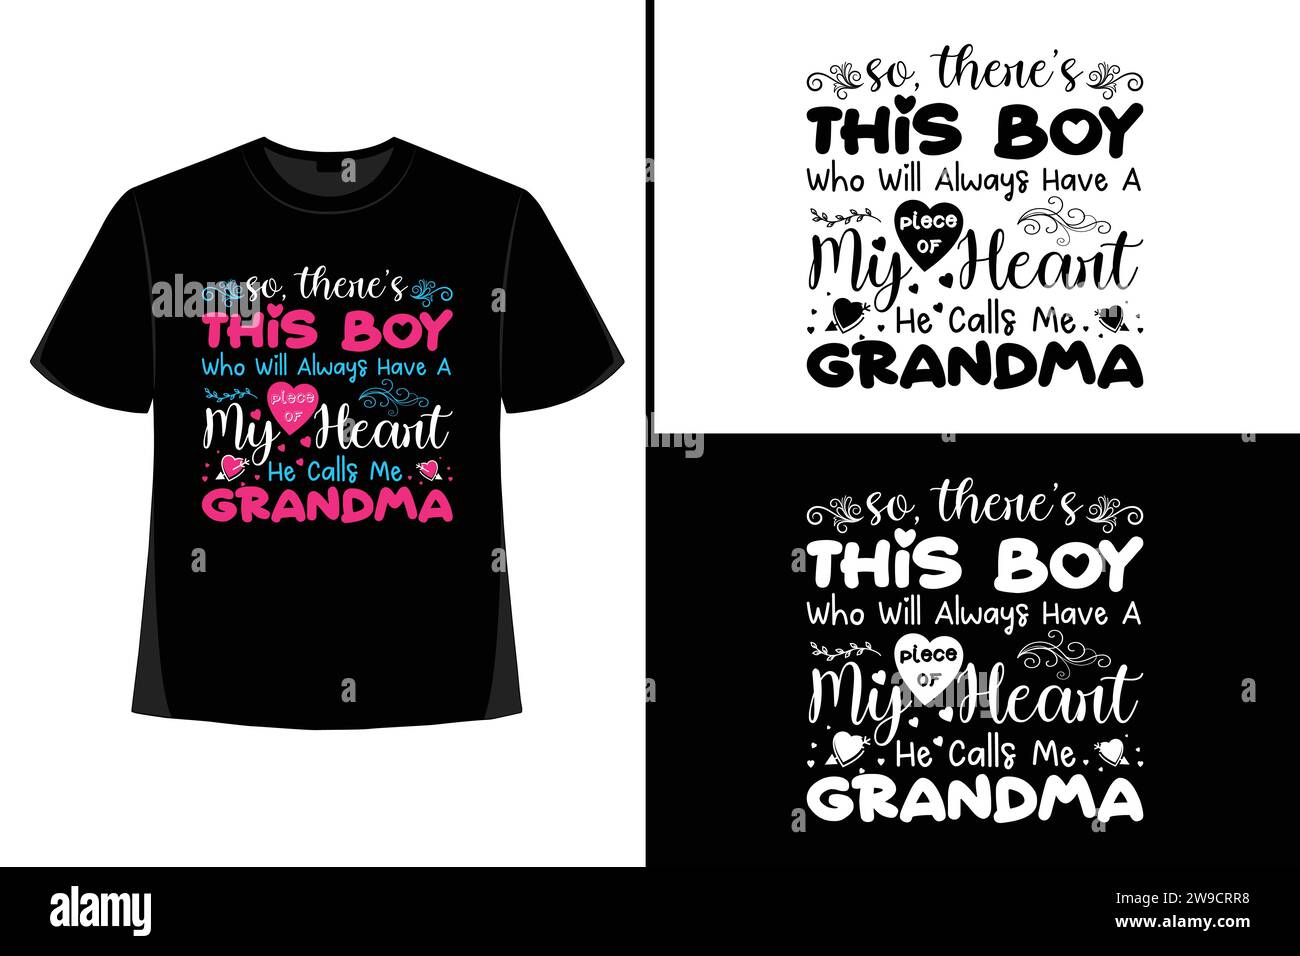 Grand-mère t-shirt design, grand-mère, grand-mère t-shirt design, typographie, vecteur, illustration, tasse, affiche, logo, chemise, grand-mère, grand-parent Illustration de Vecteur